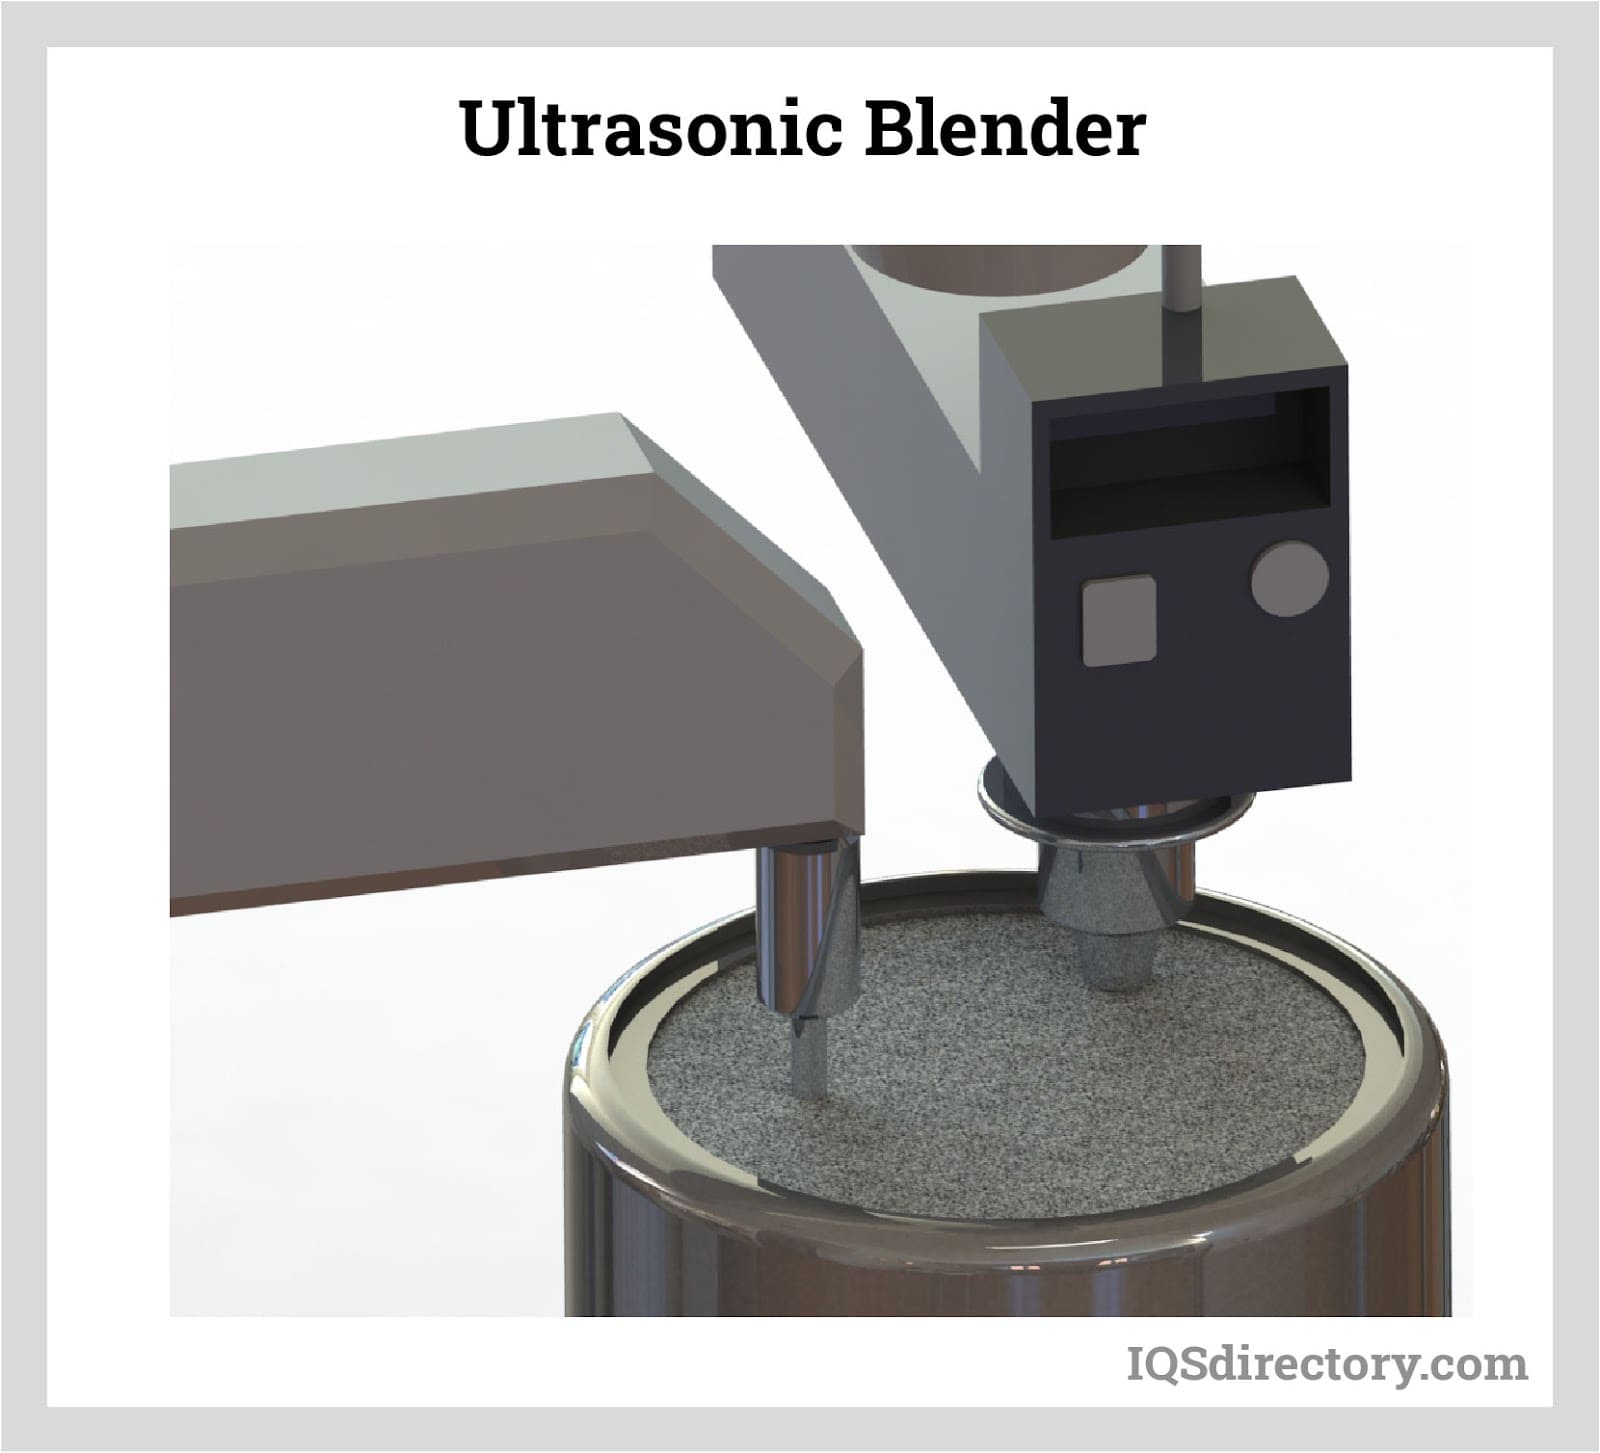 Ultrasonic Blender